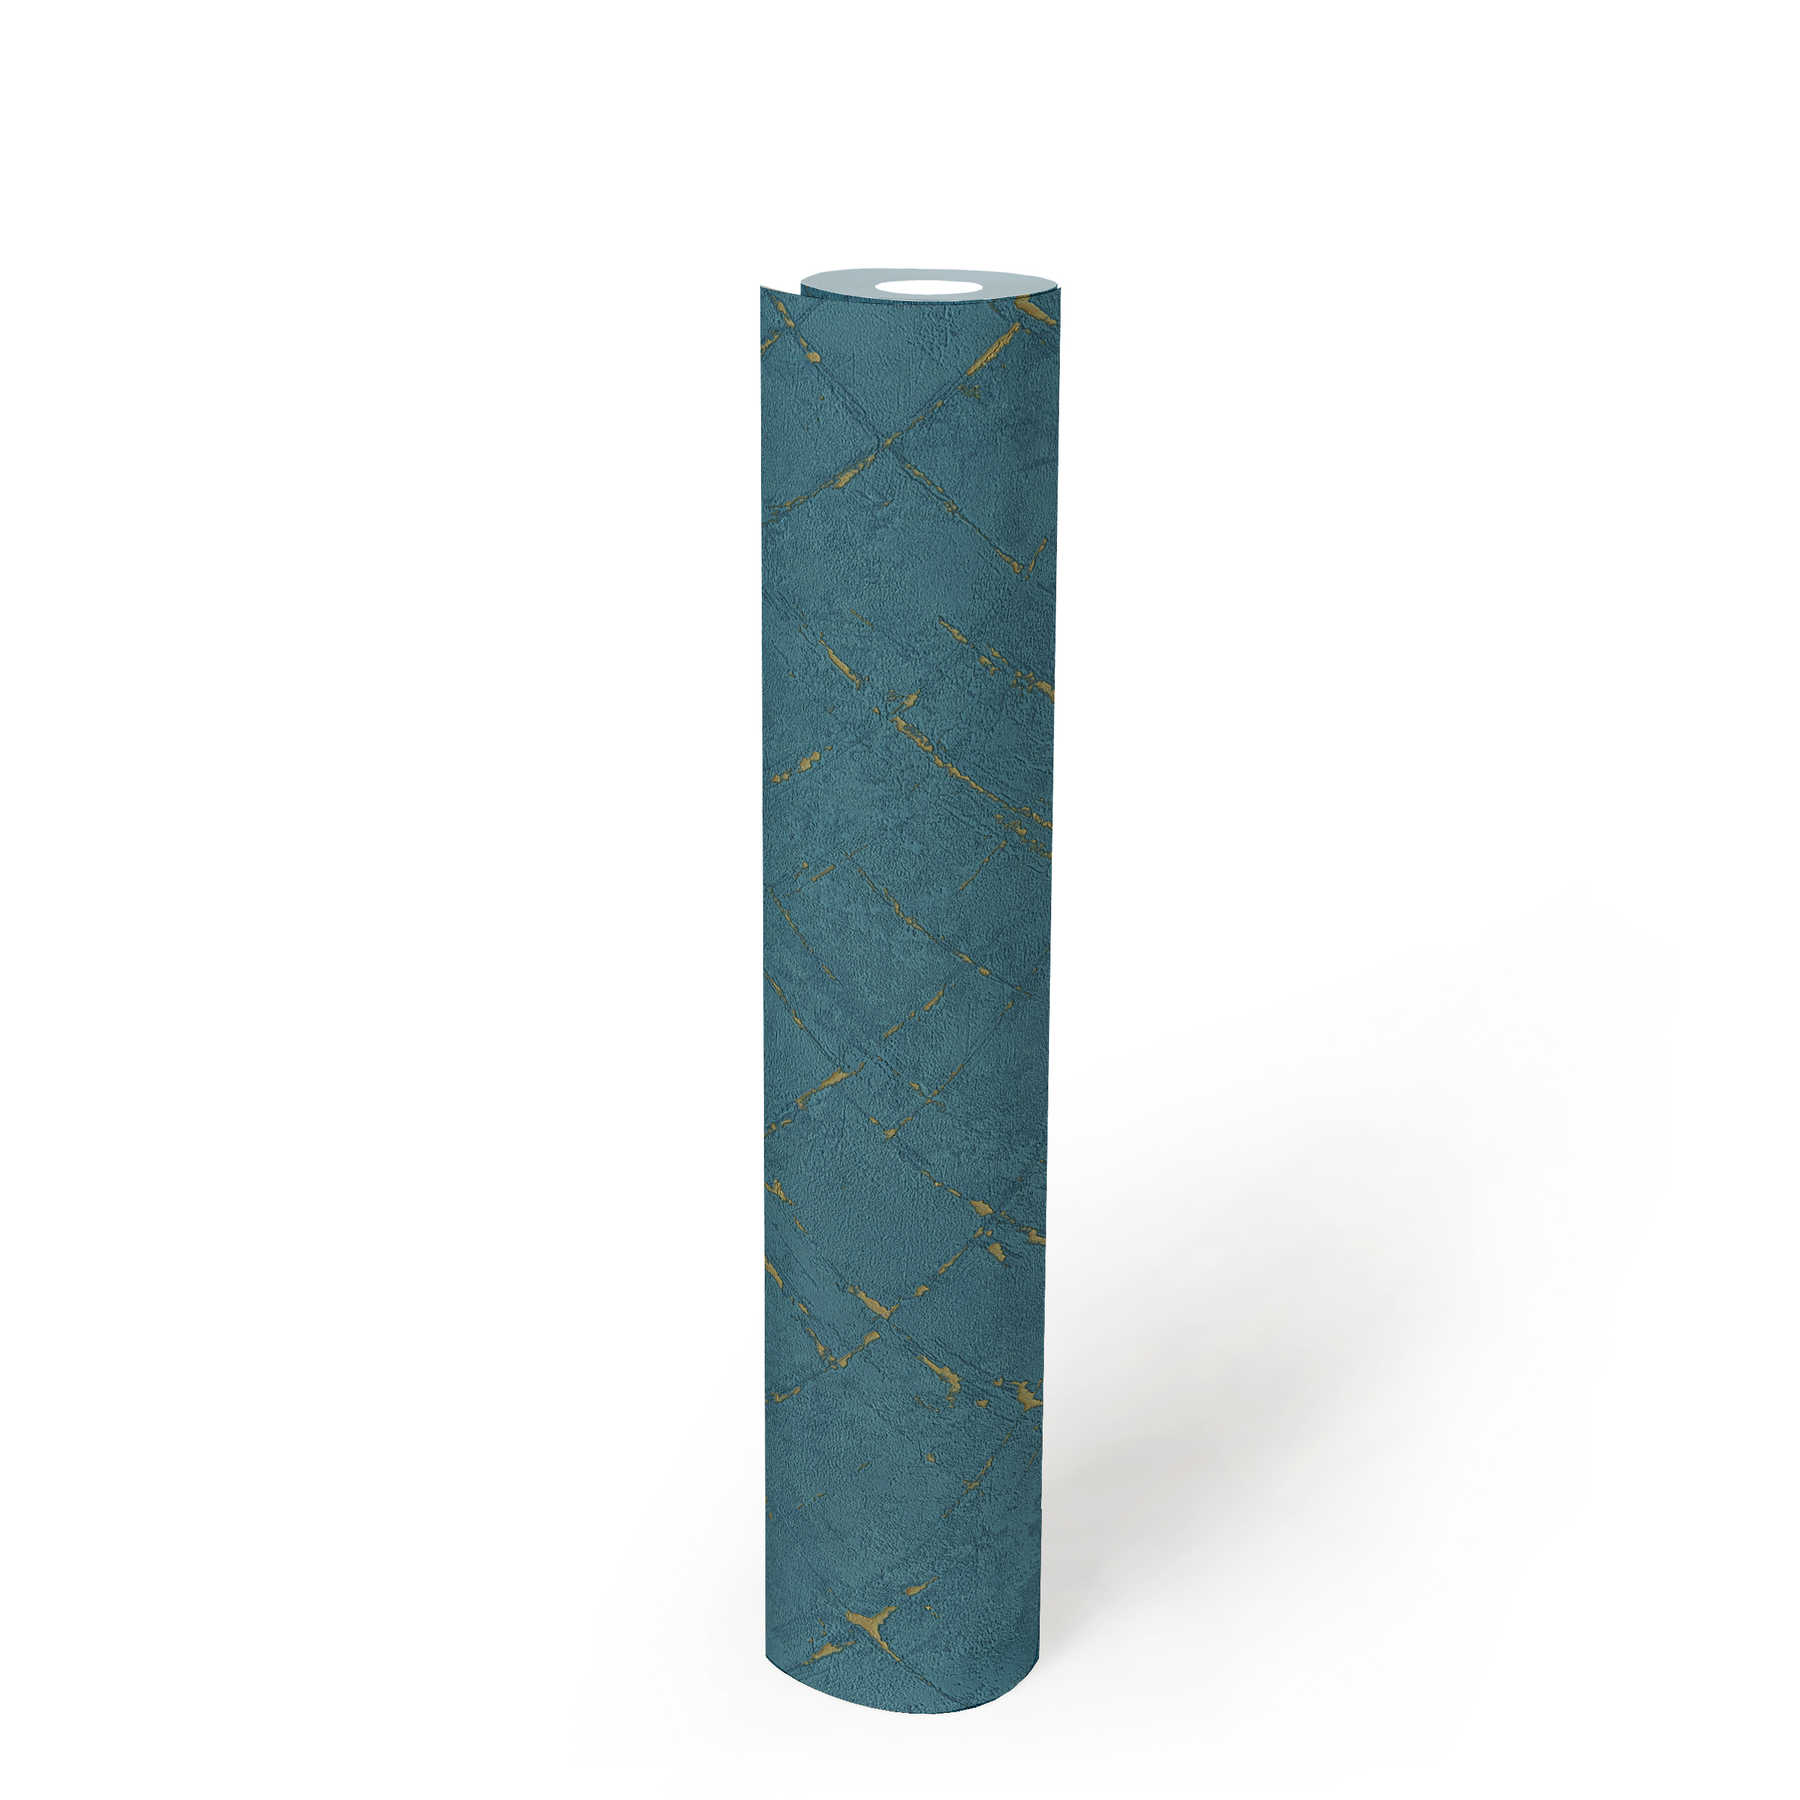             Papier peint pétrole aspect plâtre & effet métallisé - bleu, or
        